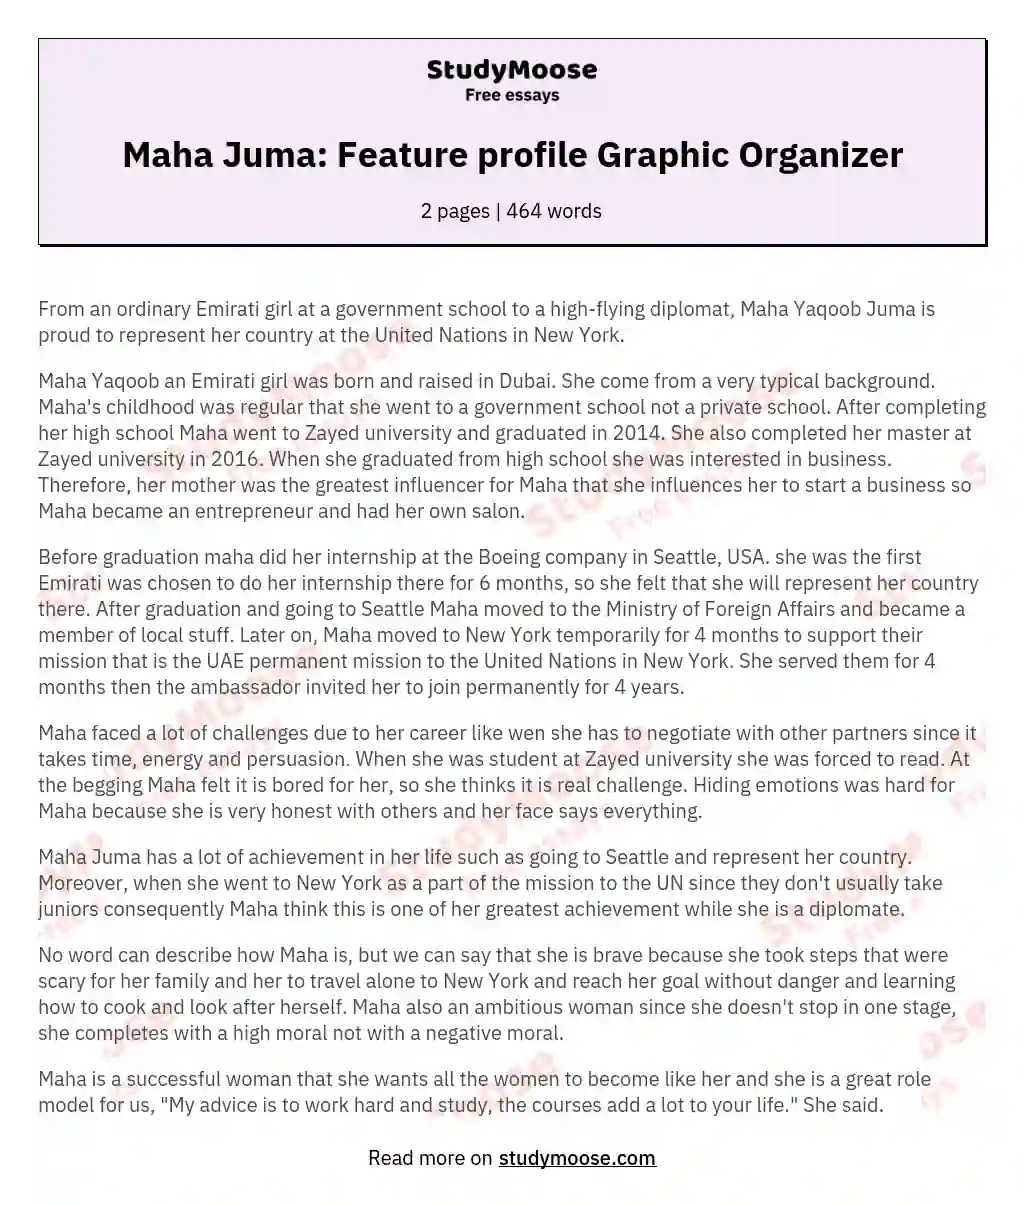 Maha Juma: Feature profile Graphic Organizer